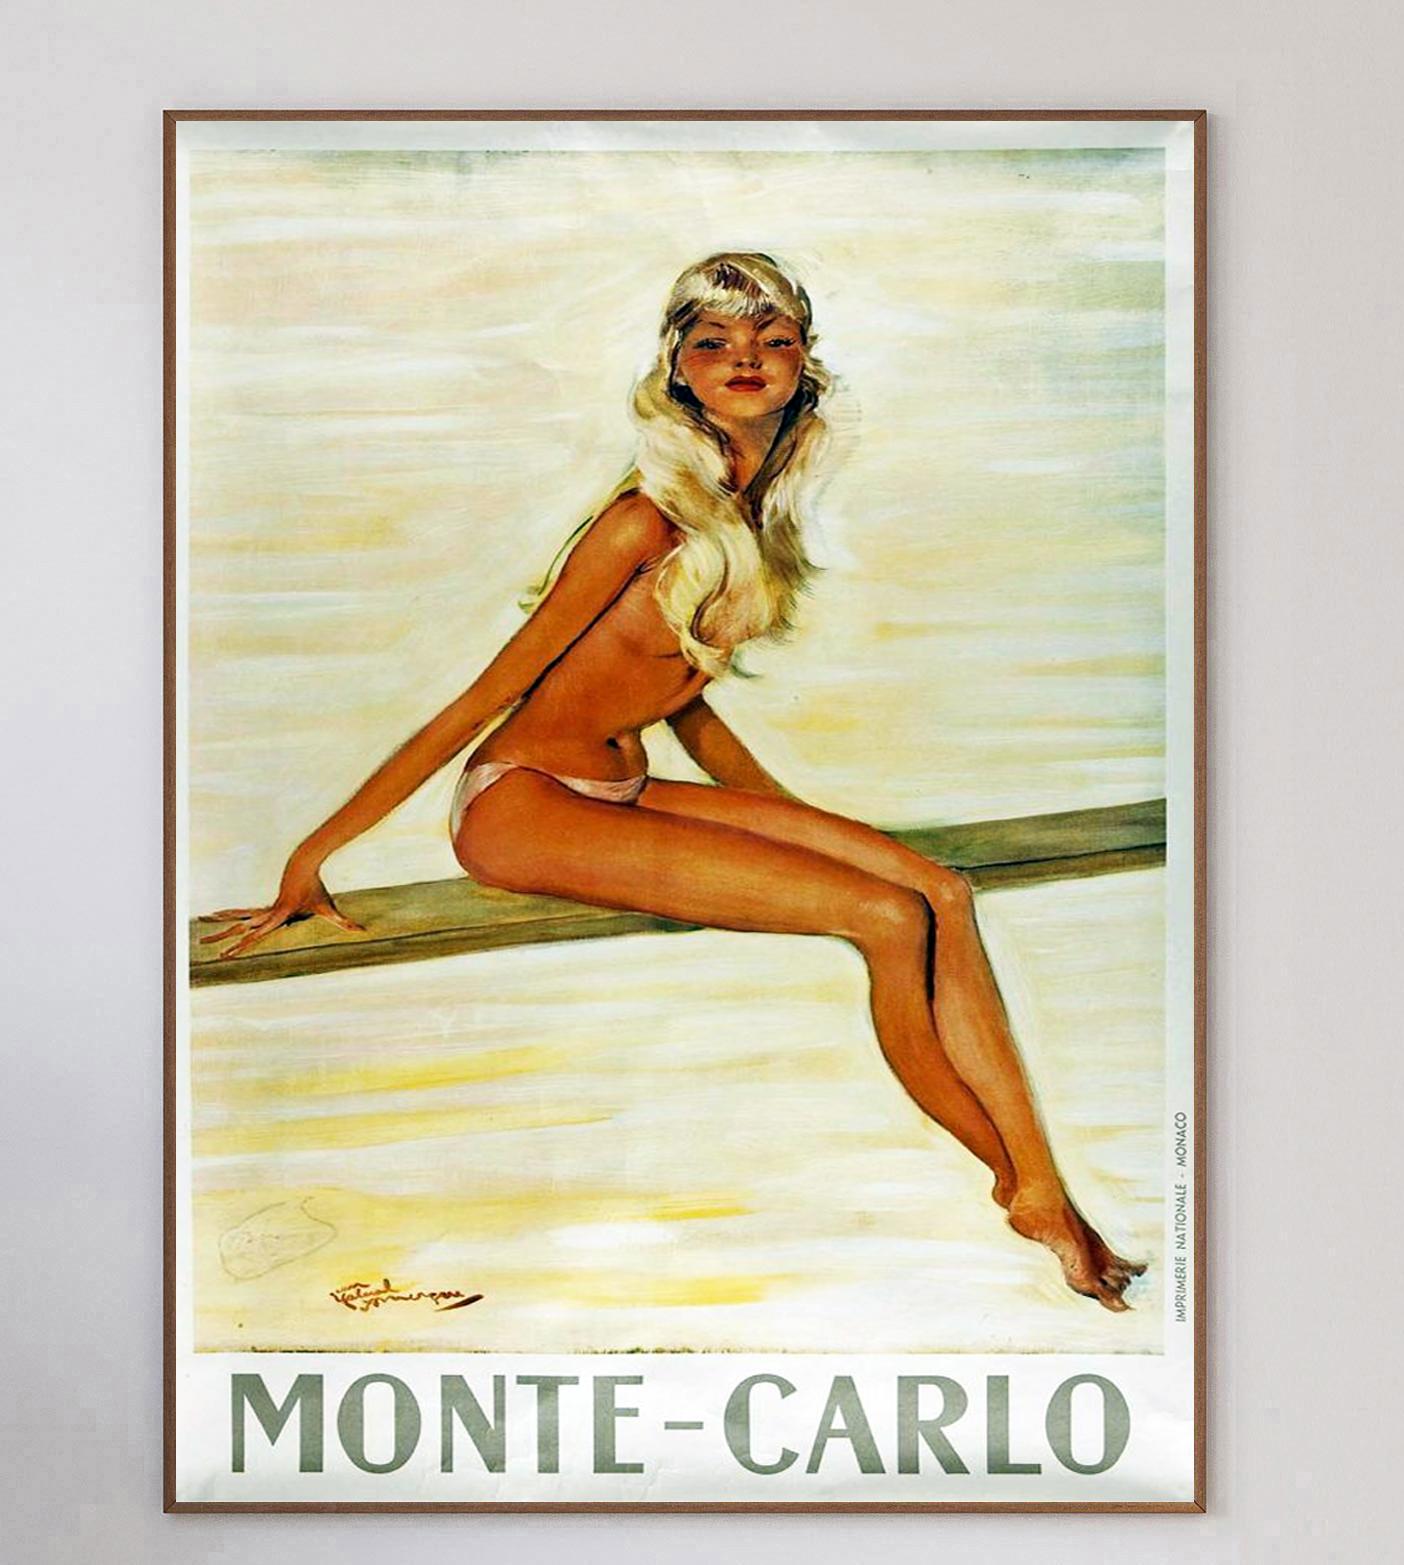 Affiche absolument magnifique promouvant la zone de Monte-Carlo à Monaco, datant de 1950. Cette pièce du milieu du siècle a une classe intemporelle grâce aux œuvres de l'artiste français Jean Gabiel Domergue, largement considéré comme le père de la